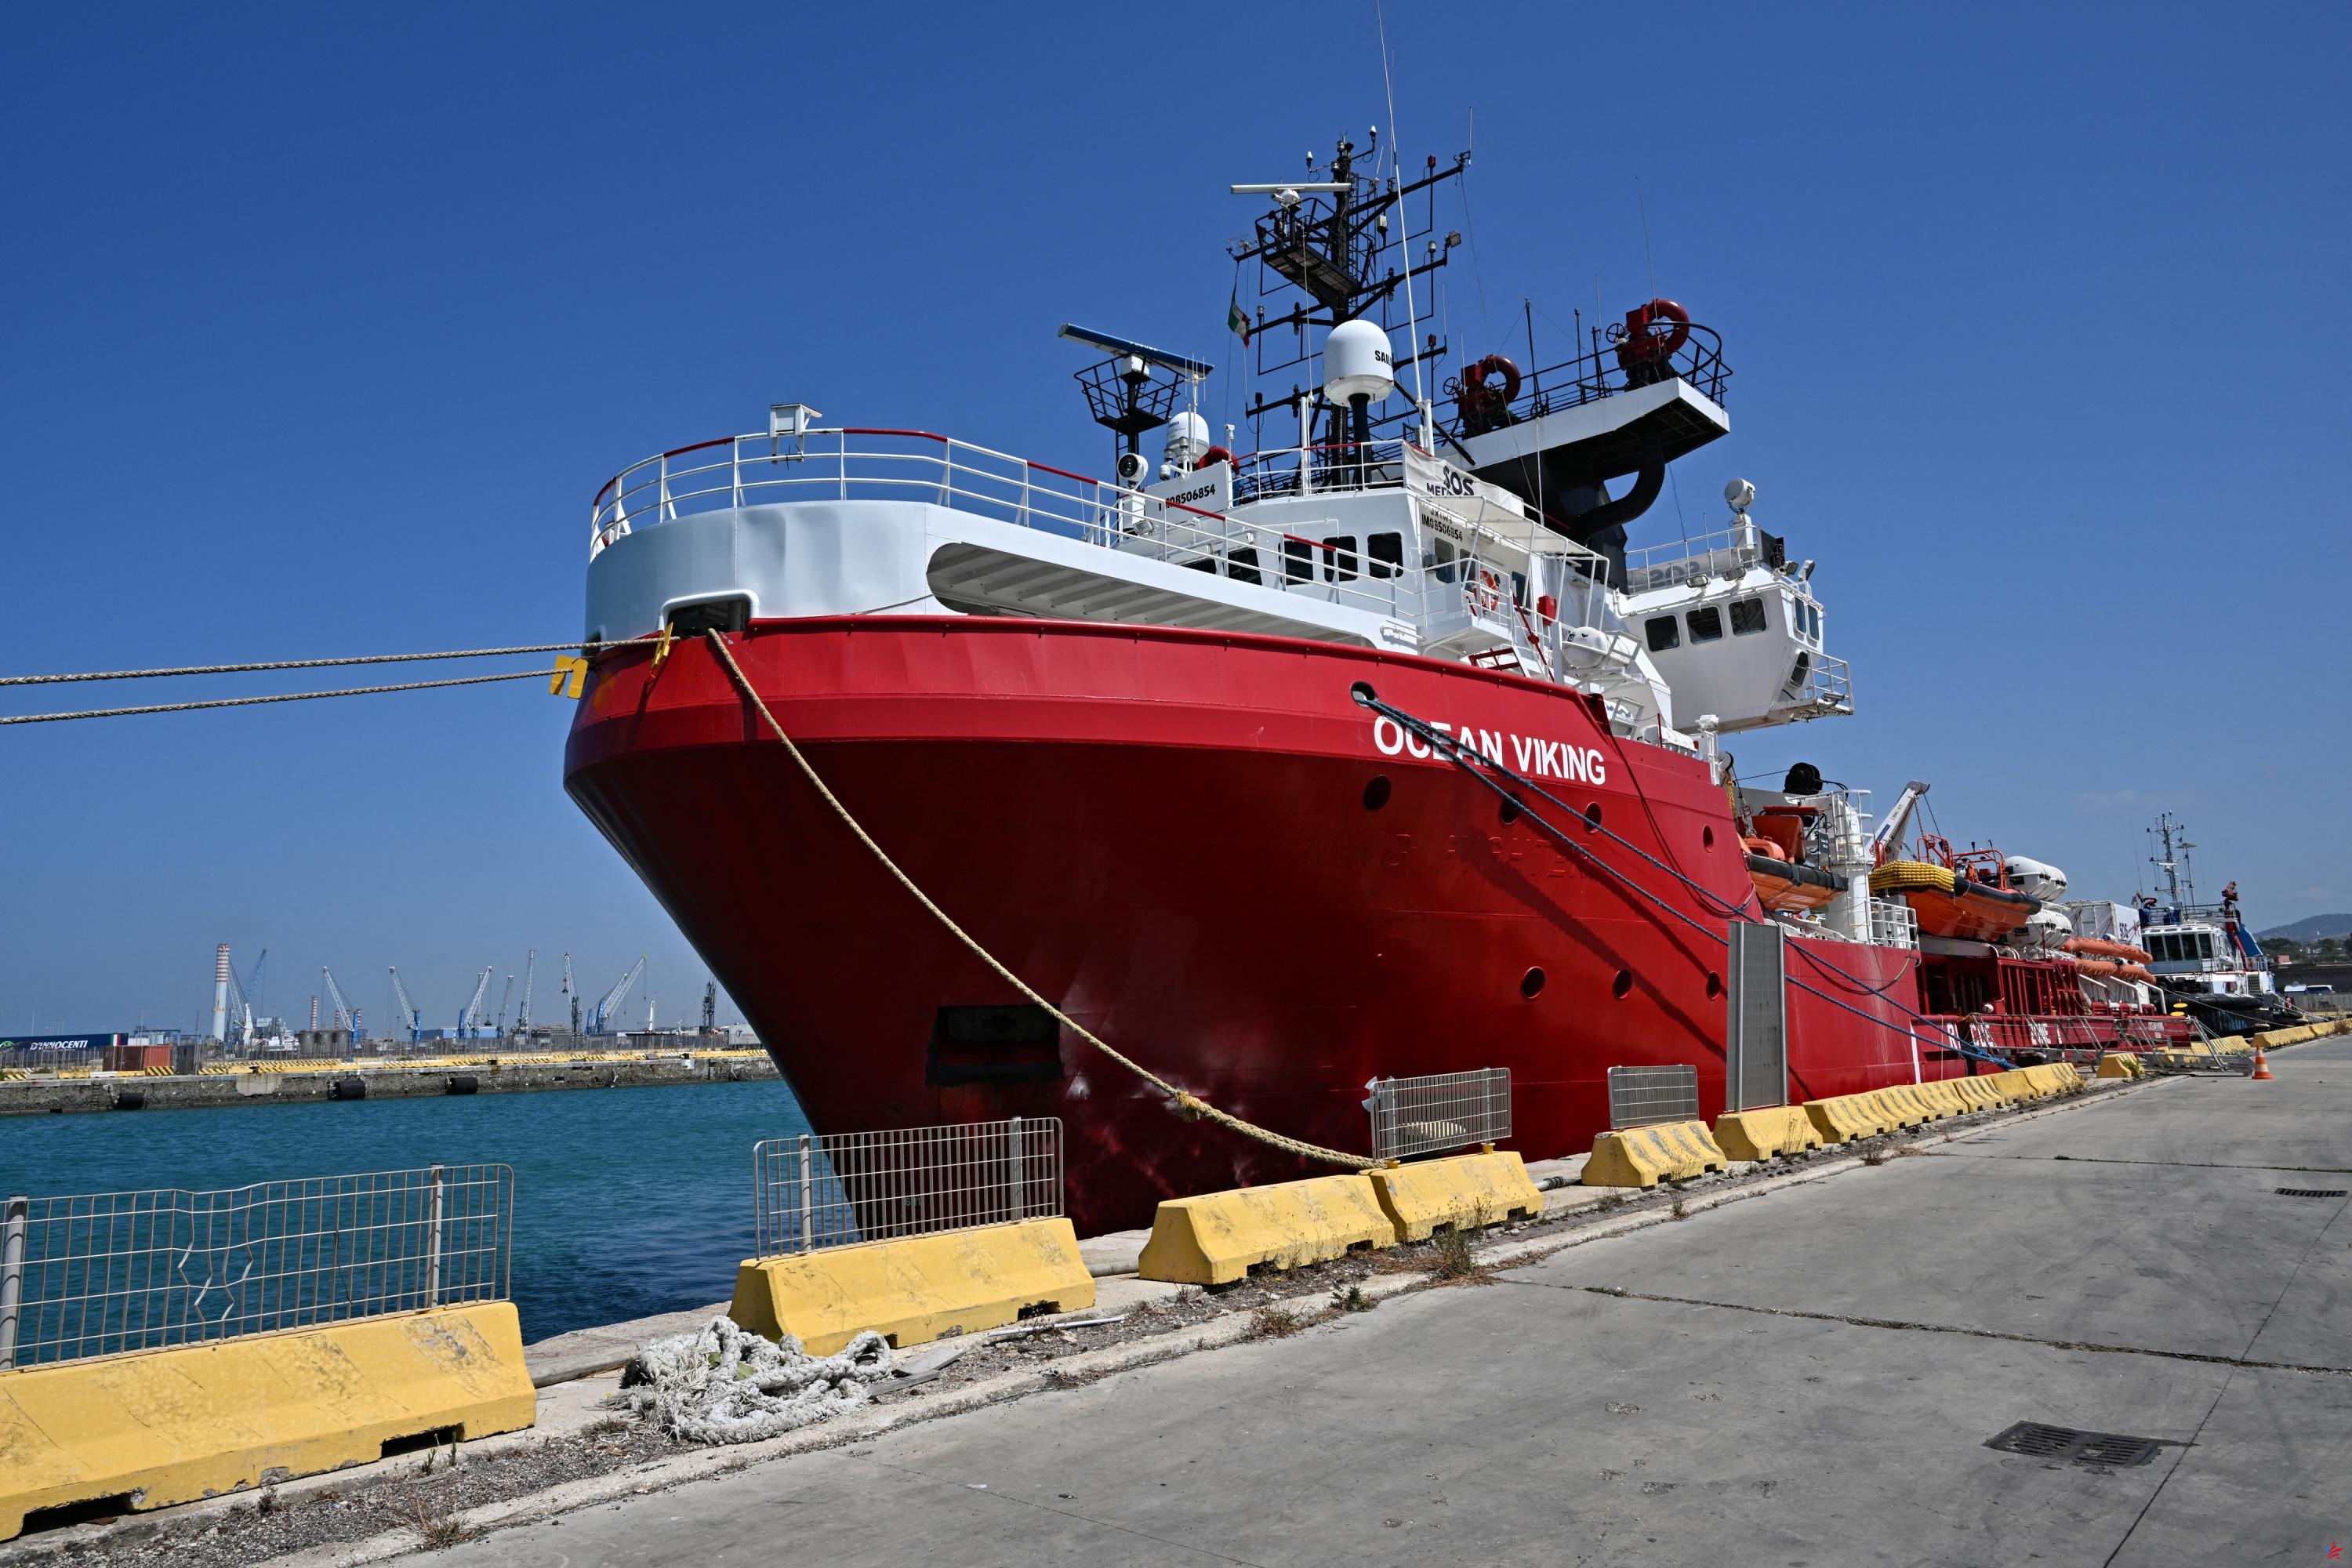 El barco ambulancia Ocean Viking rescata a 110 inmigrantes frente a Libia